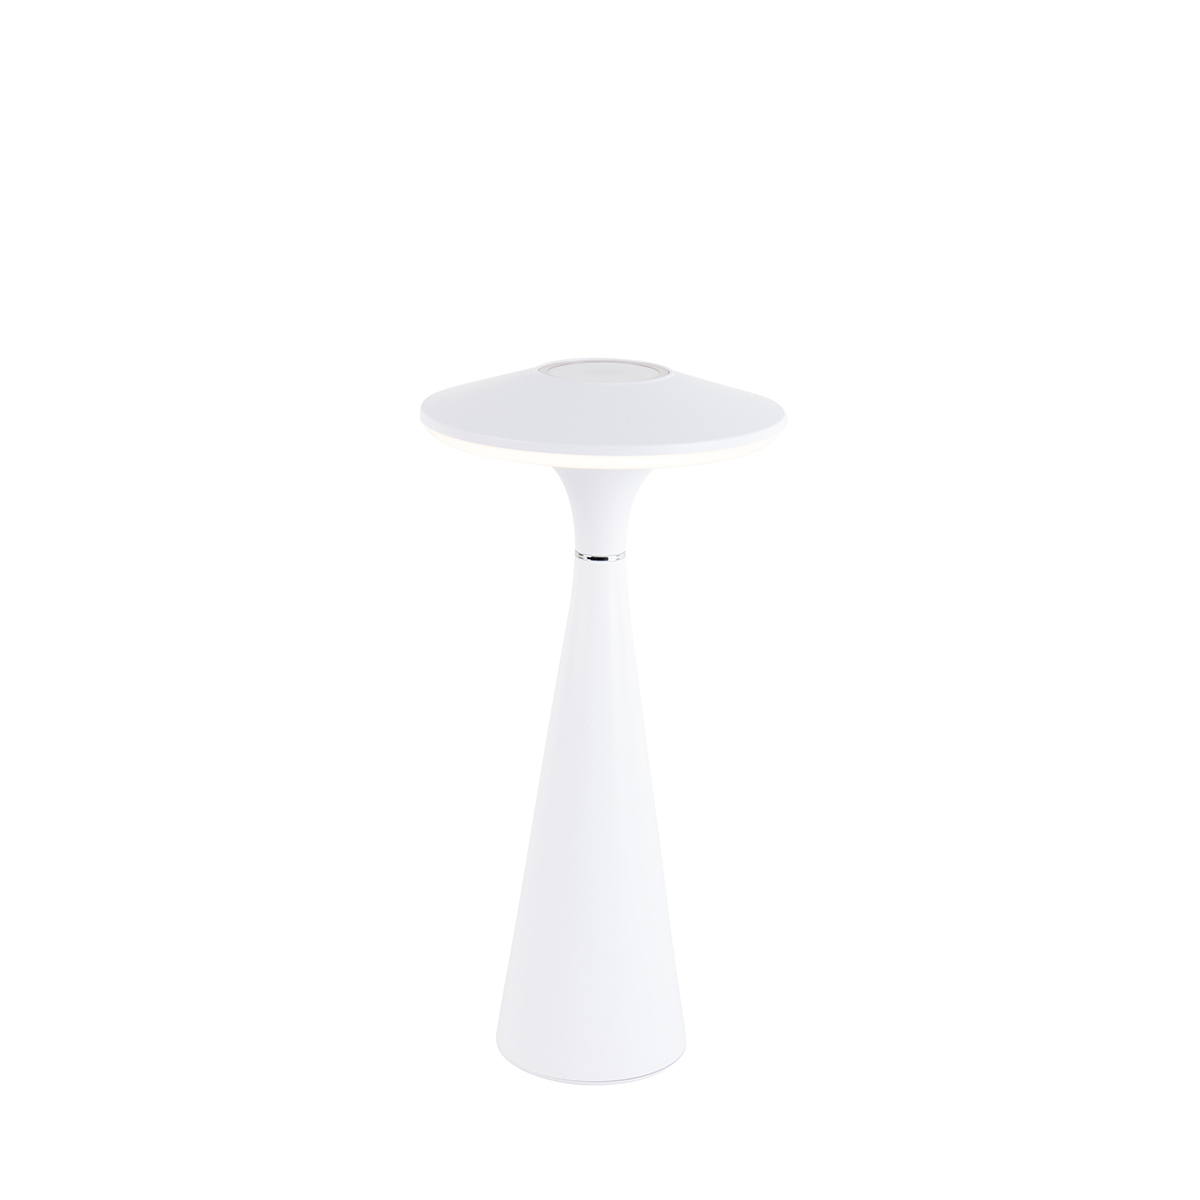 Asztali lámpa fehér, LED 3 fokozatban szabályozható IP44 újratölthető - Espace